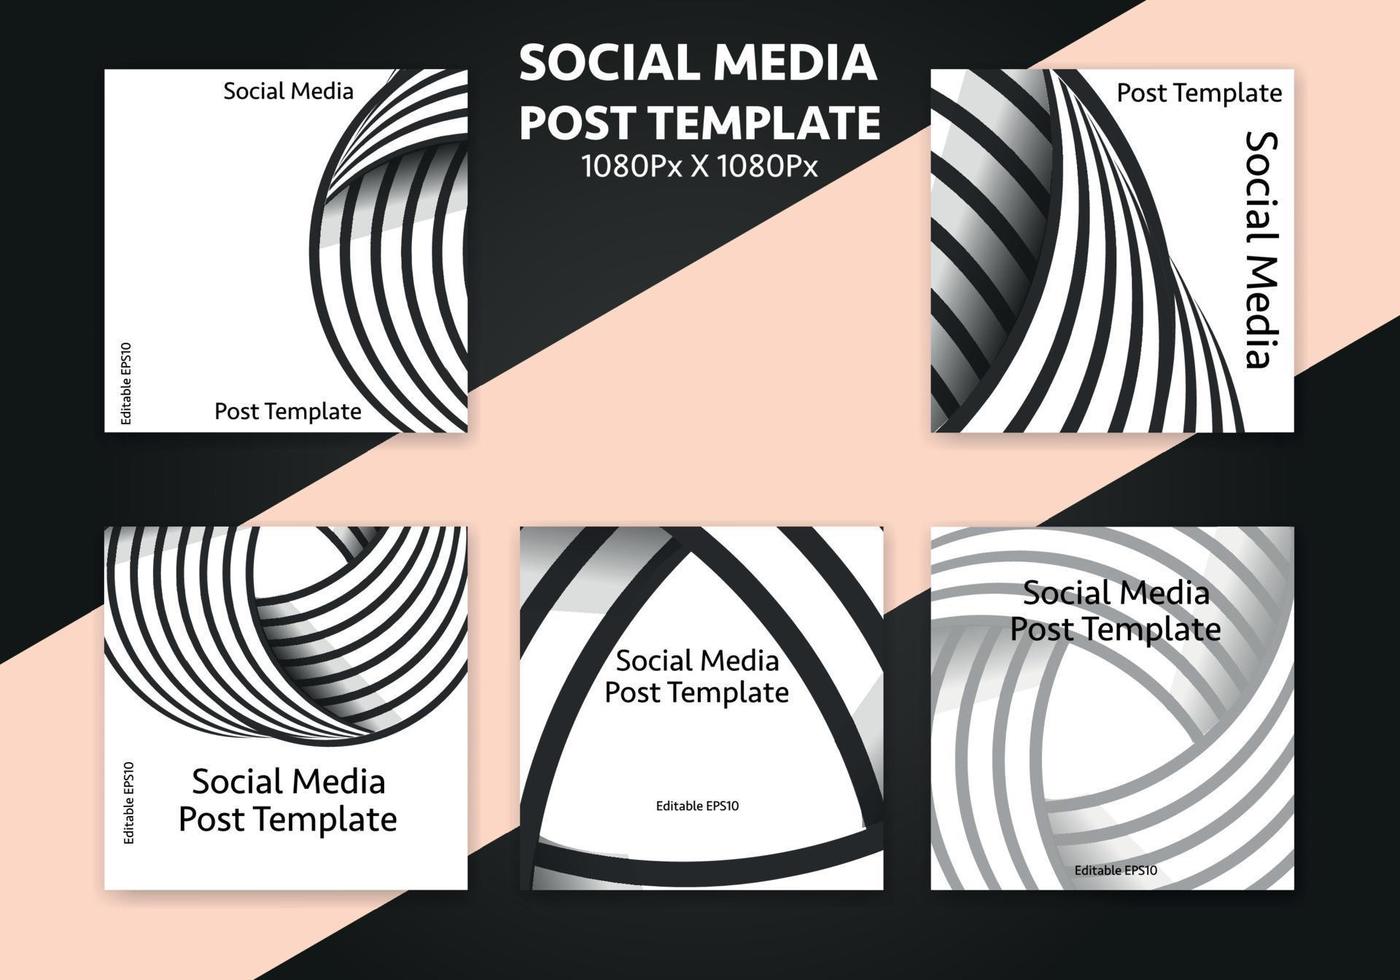 posta mall för social media - redigerbar posta omslag design för företag vektor